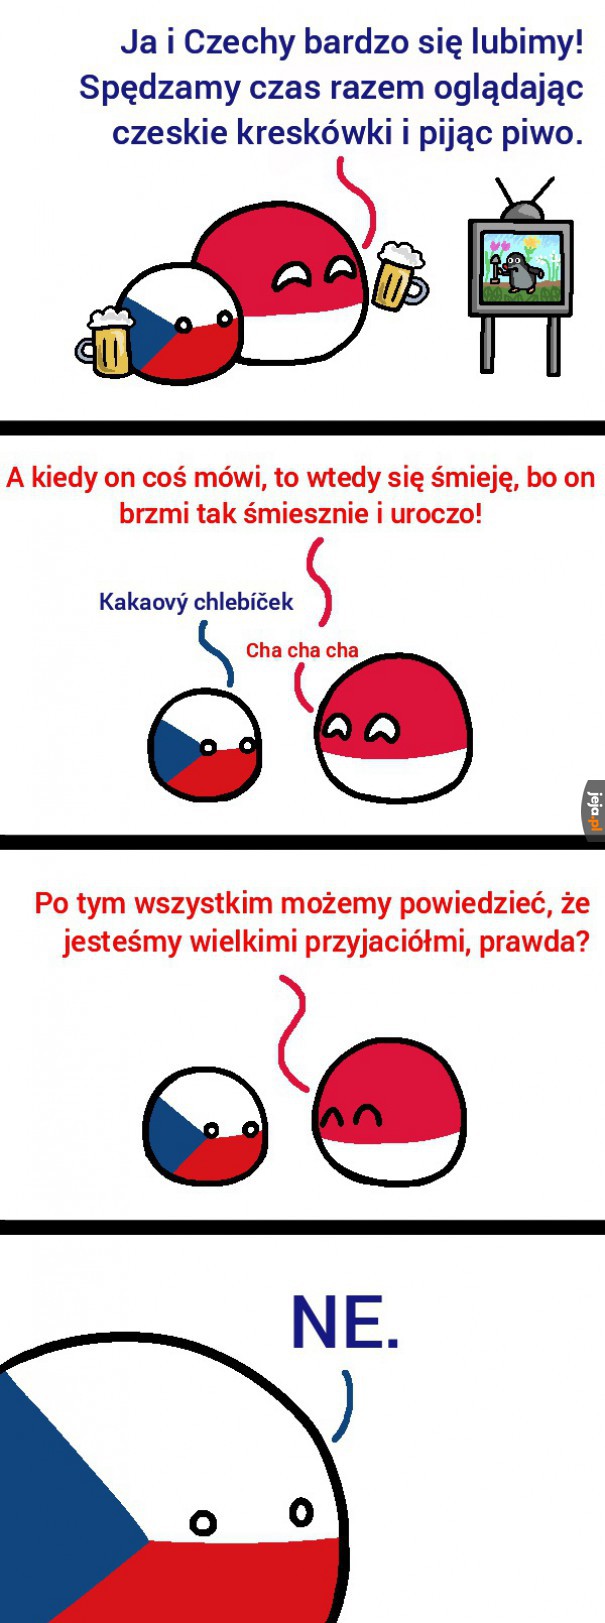 Polsko-czeskie relacje